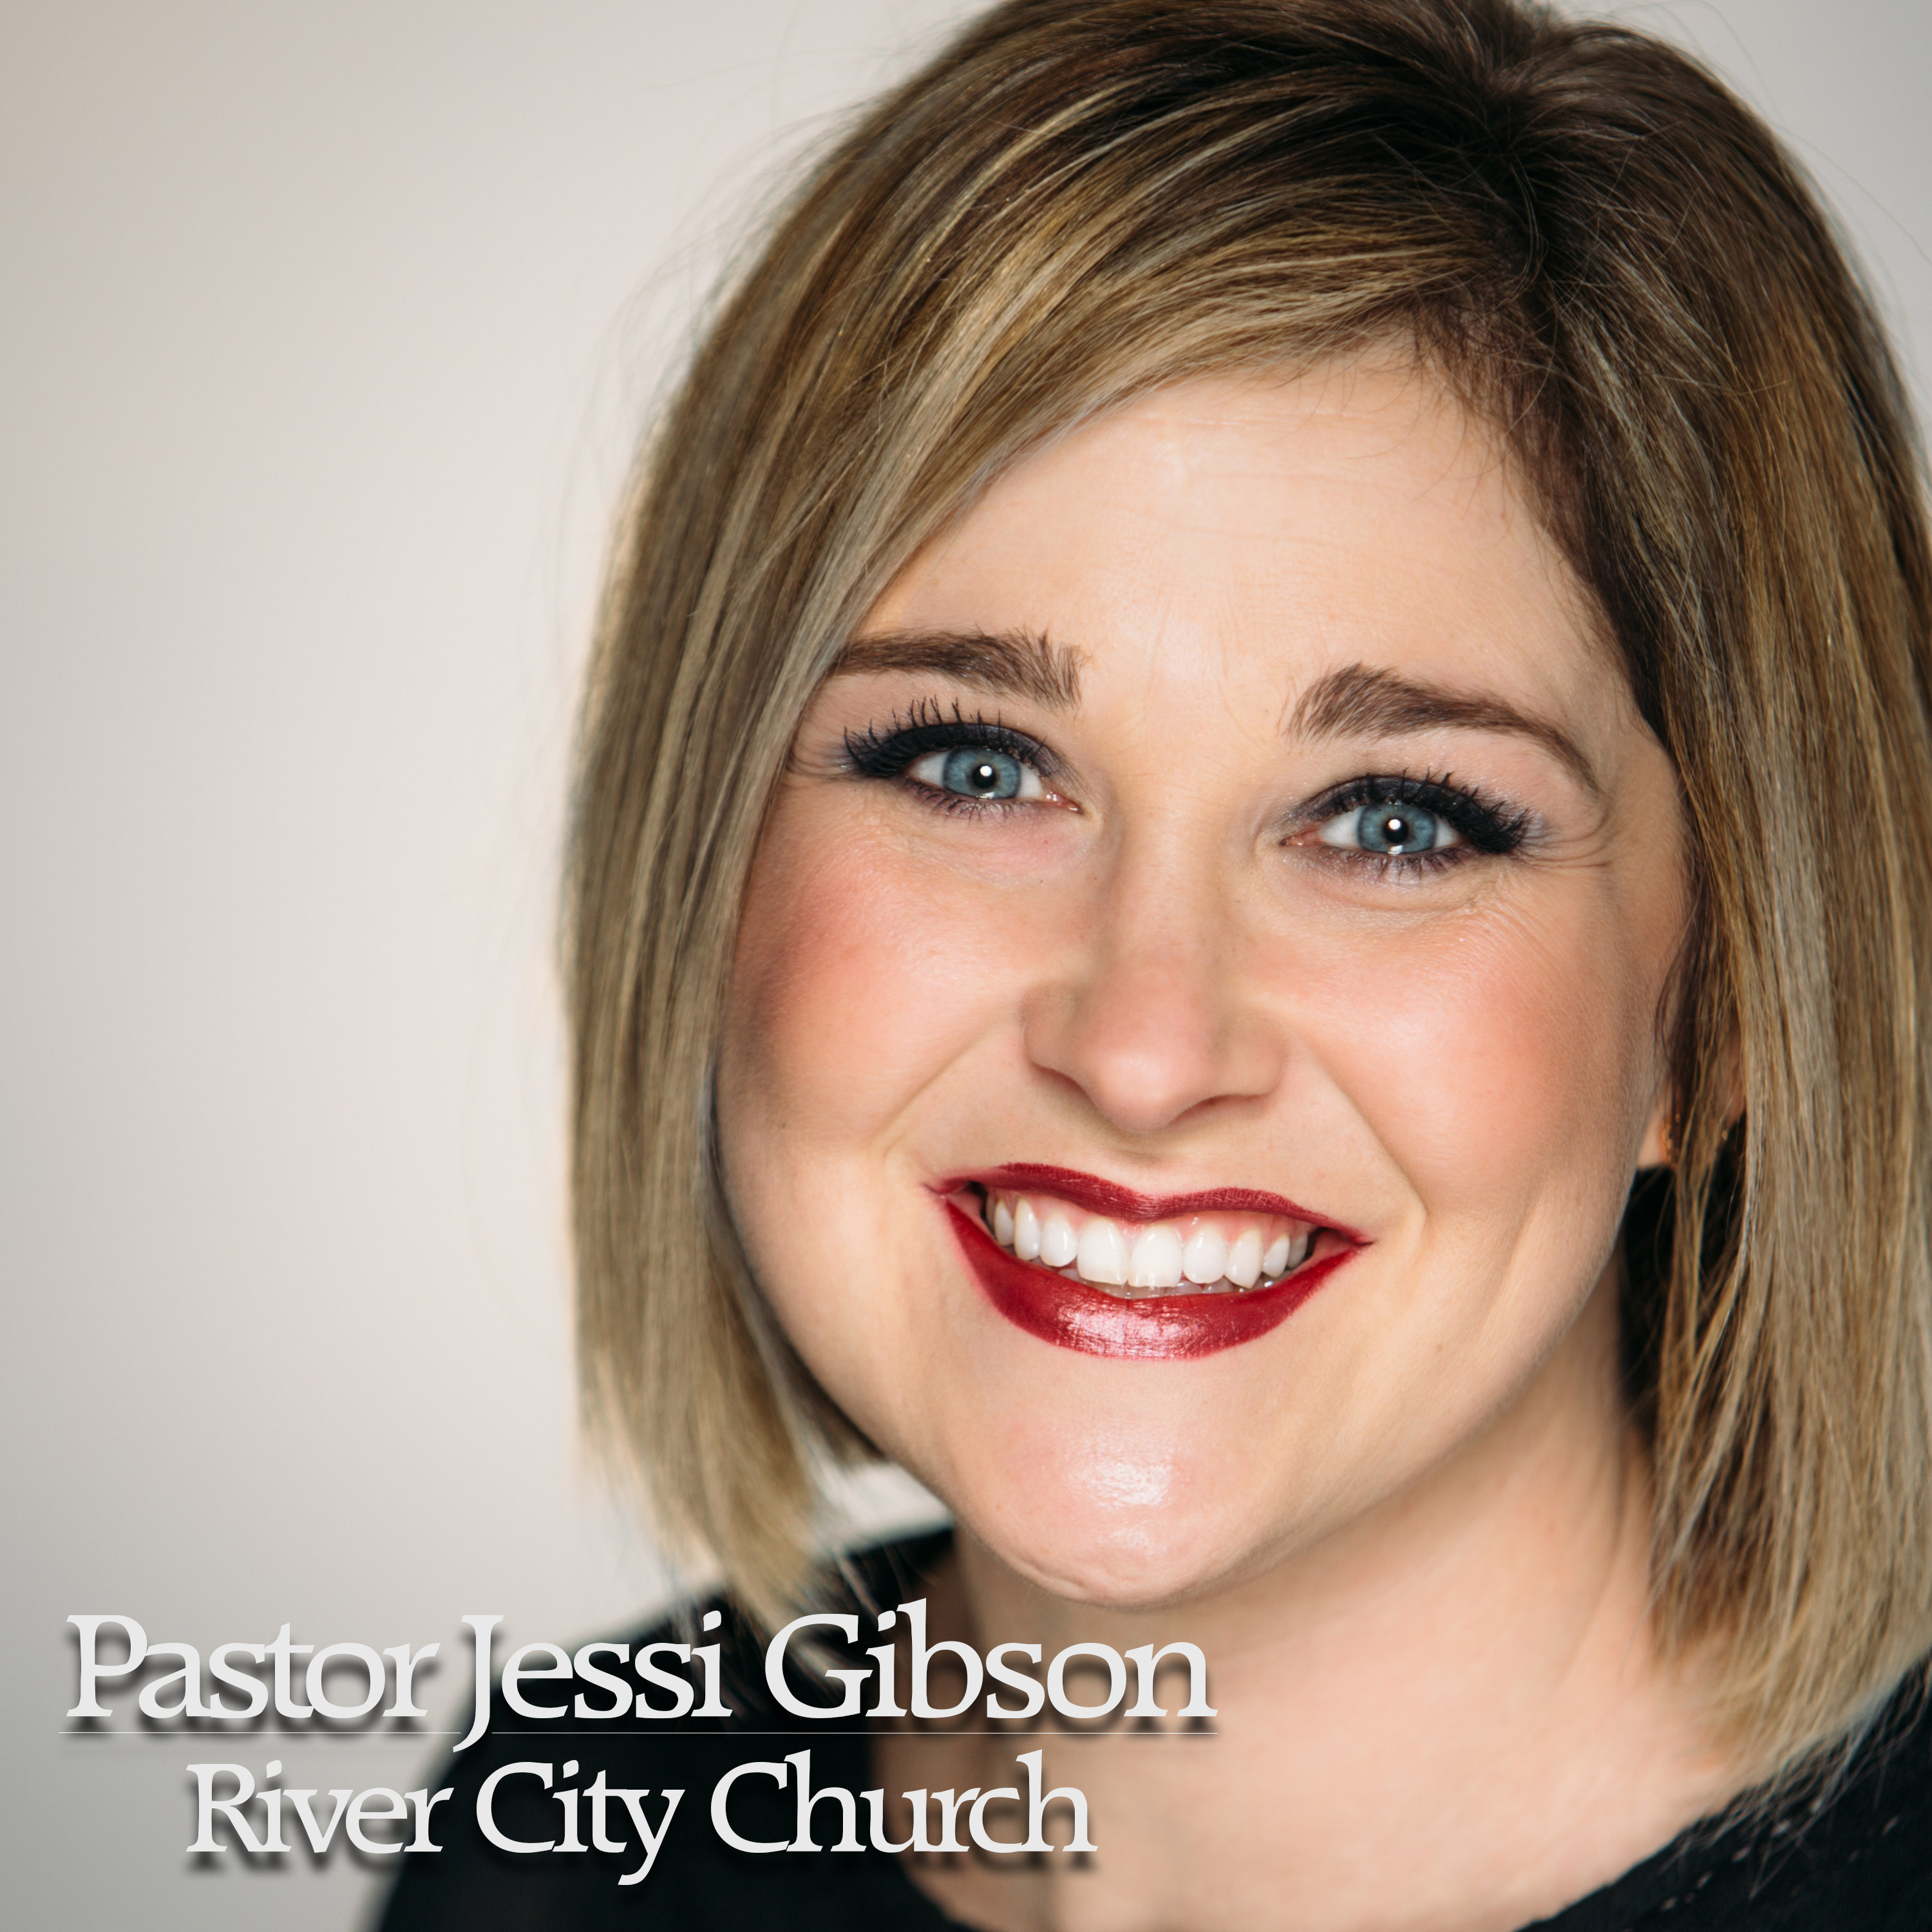 Owensboro Church | Soaring with God